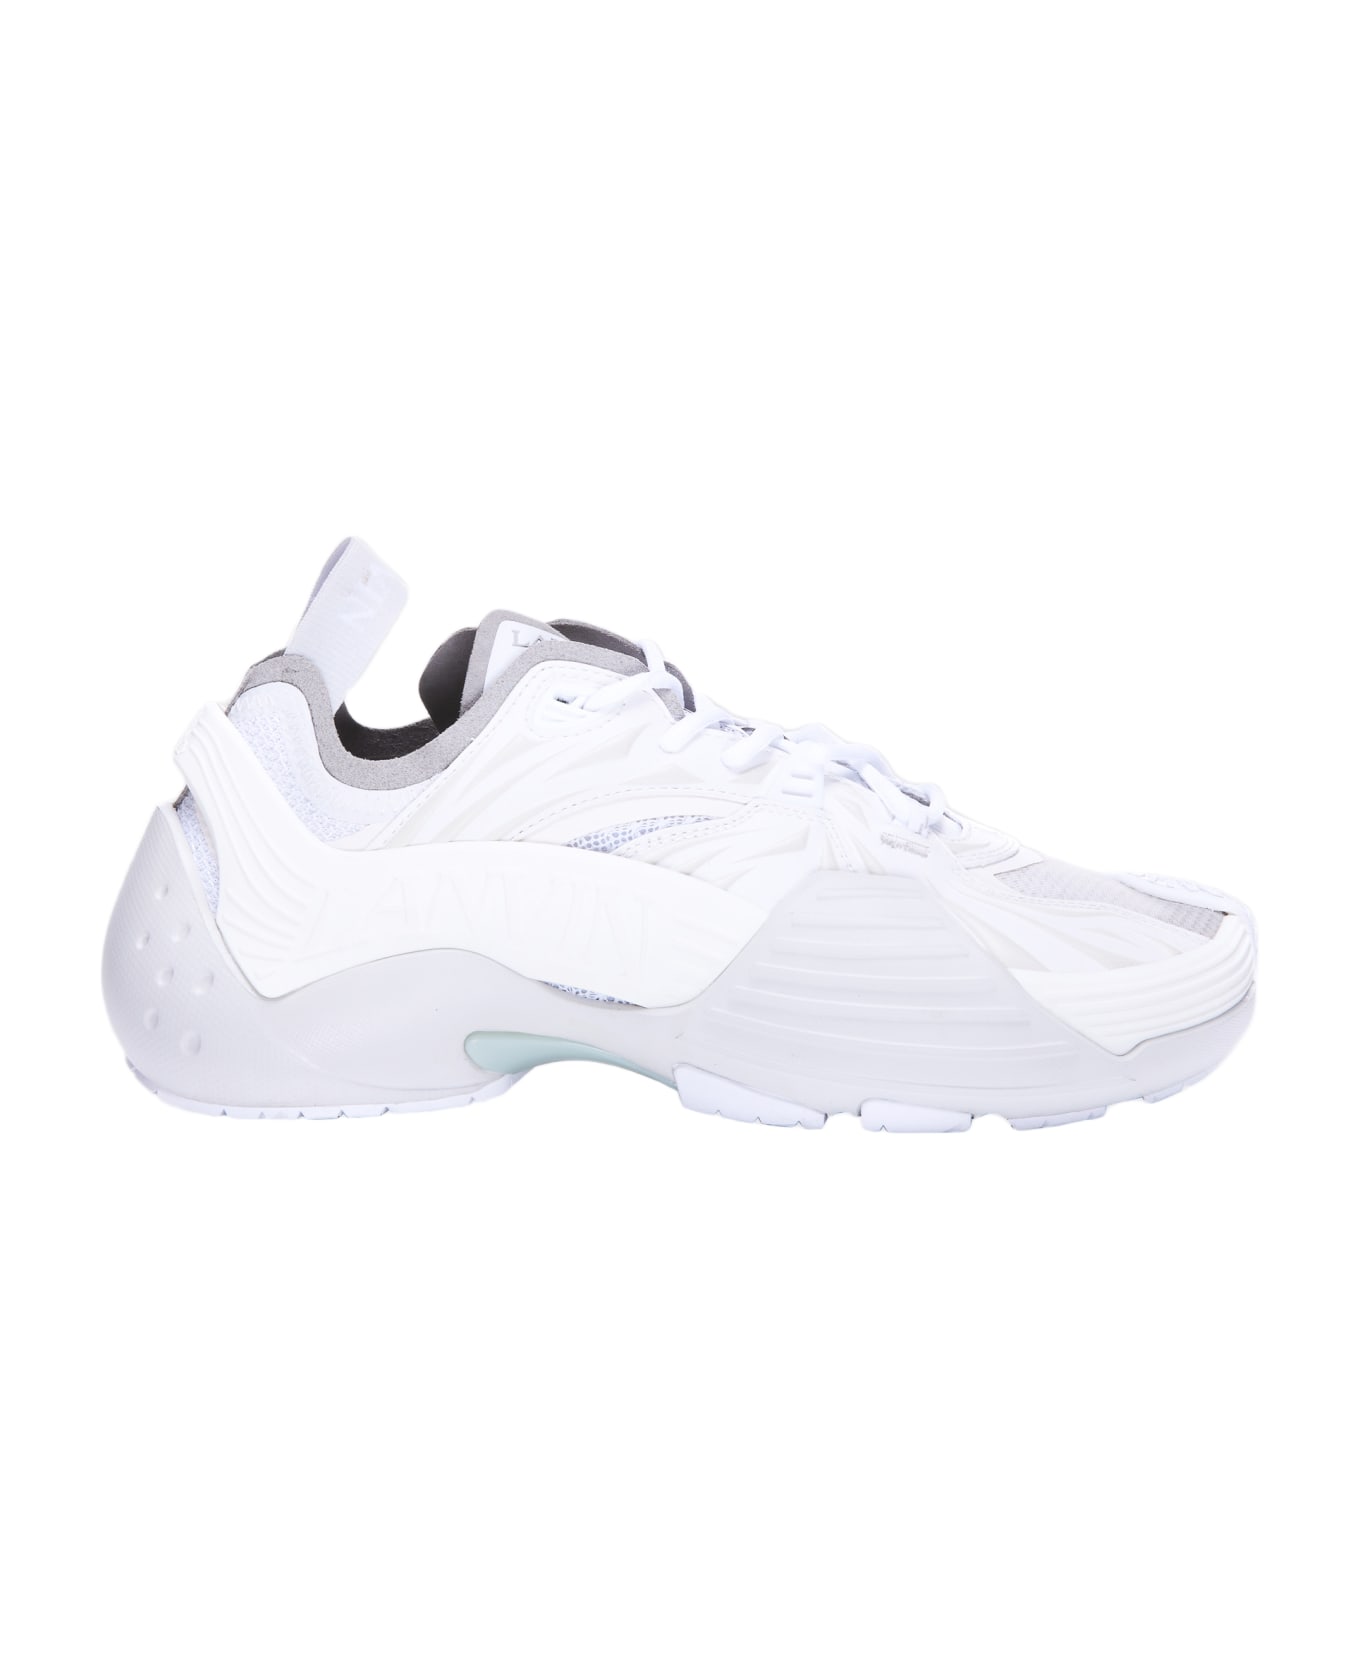 Lanvin White Mesh Flash-x Sneakers - White